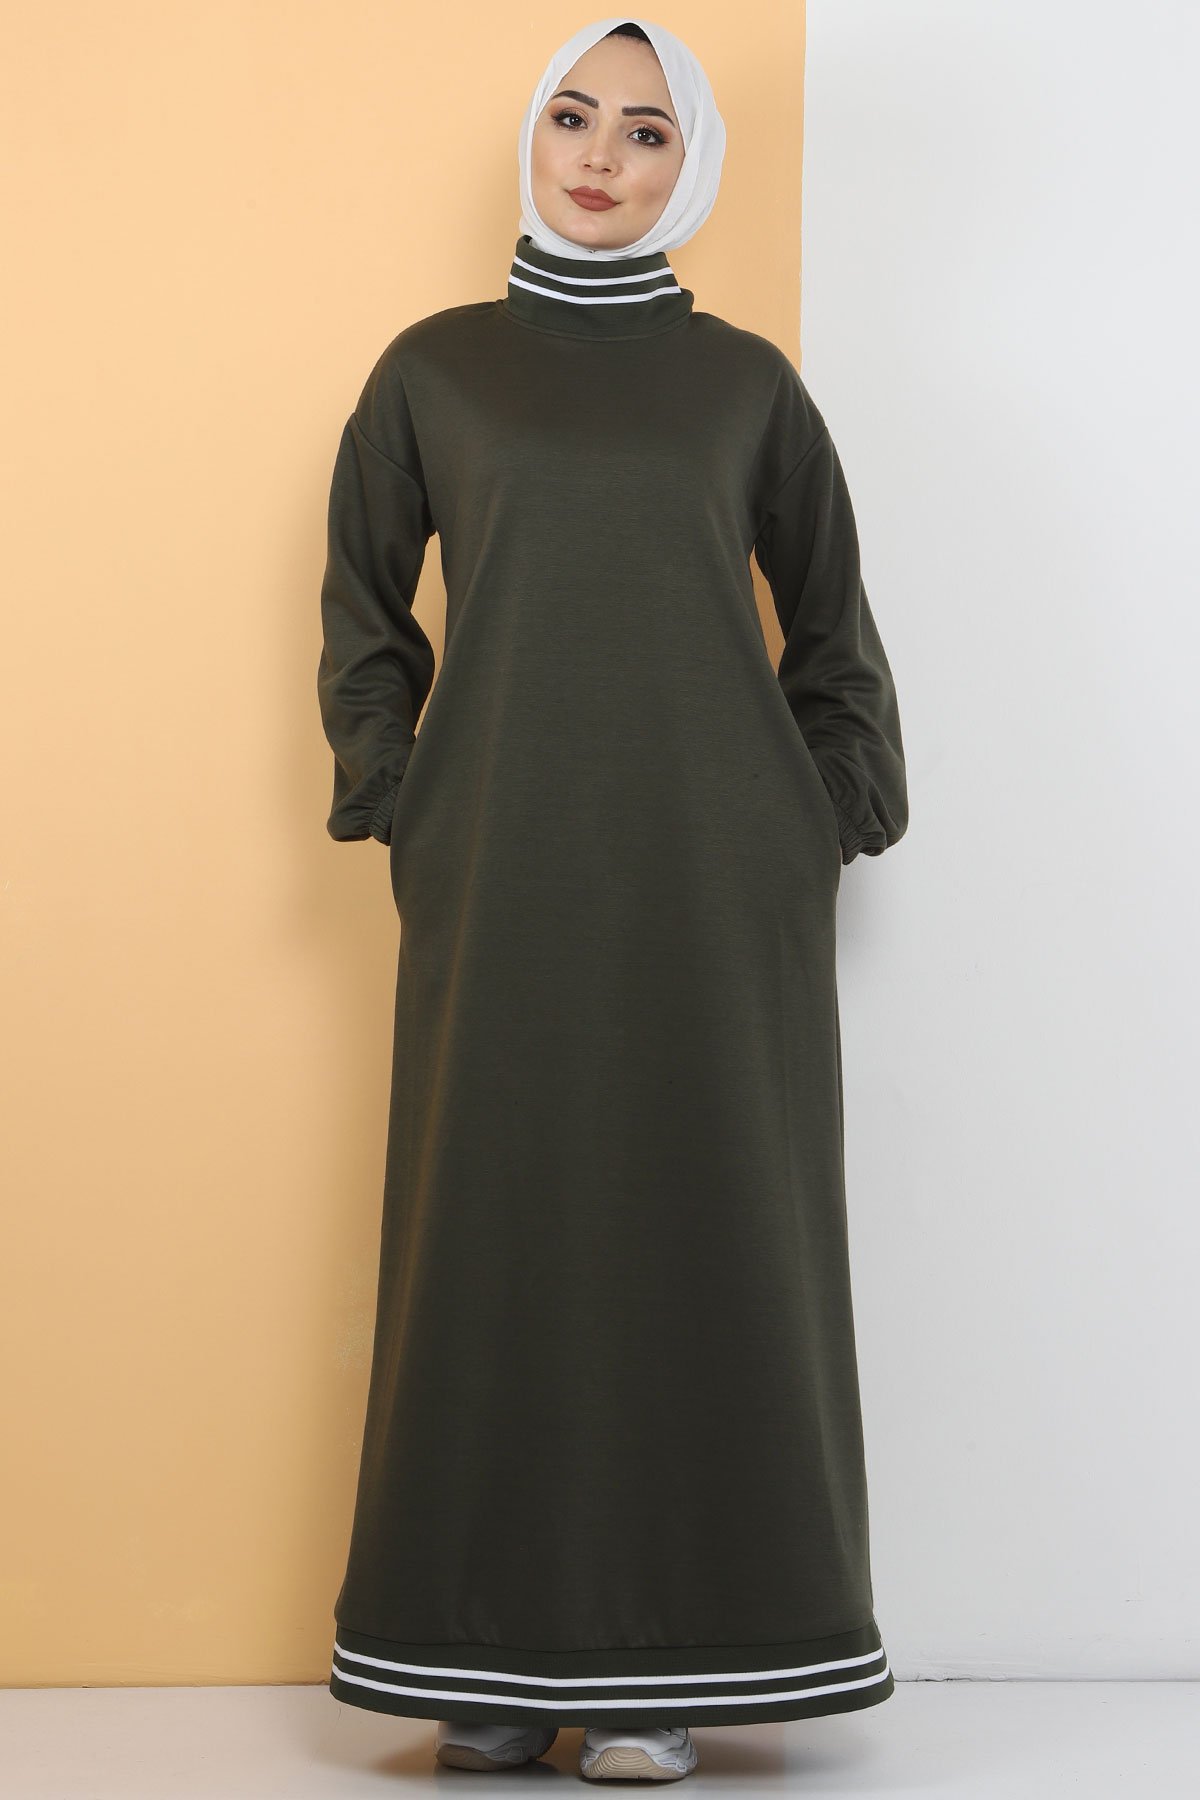 فستان رياضي TS10484 خاكي